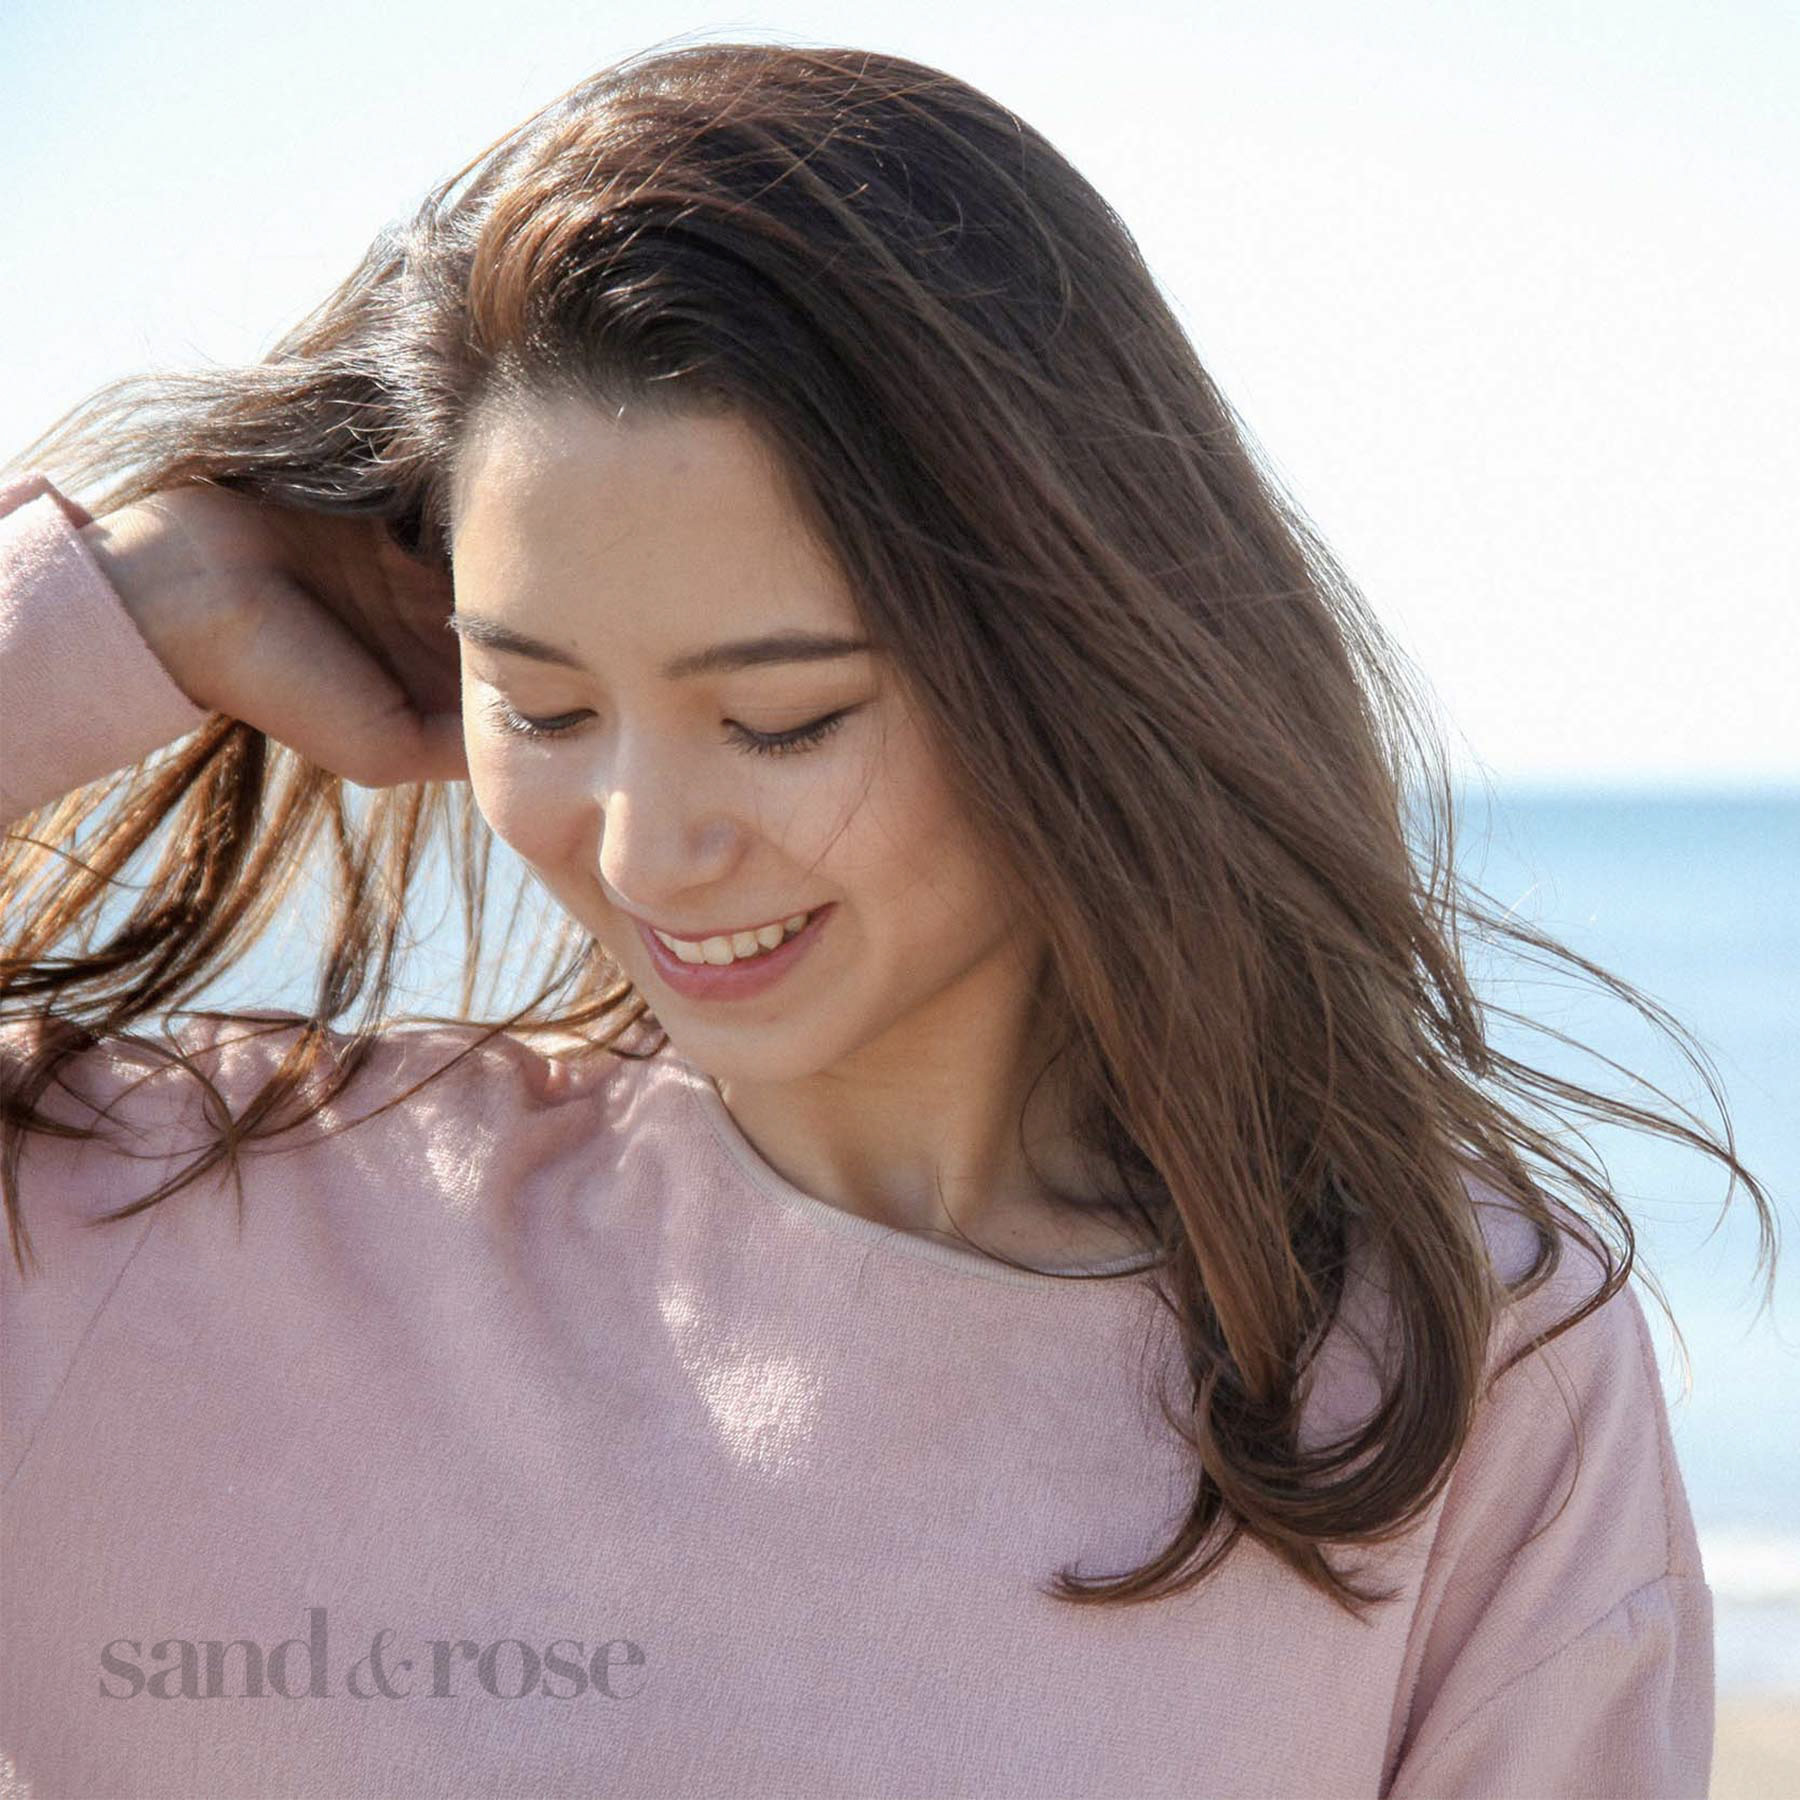 sand&rose【サンドアンドローズ】のスタイル紹介。抜け感のあるストレート